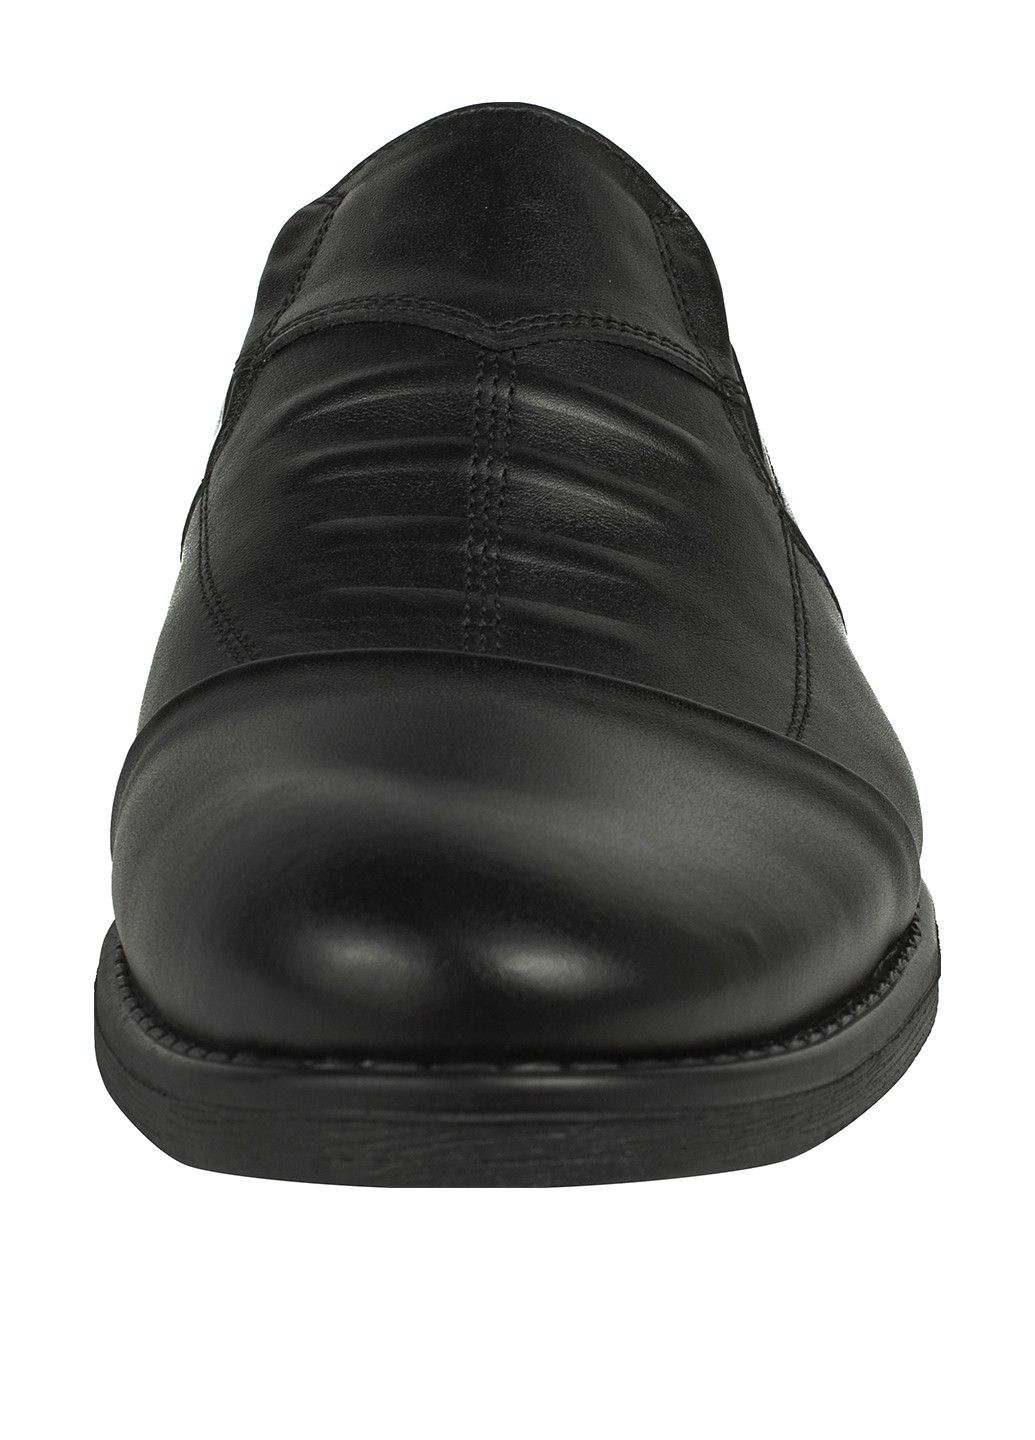 Черные классические туфли Anino без шнурков